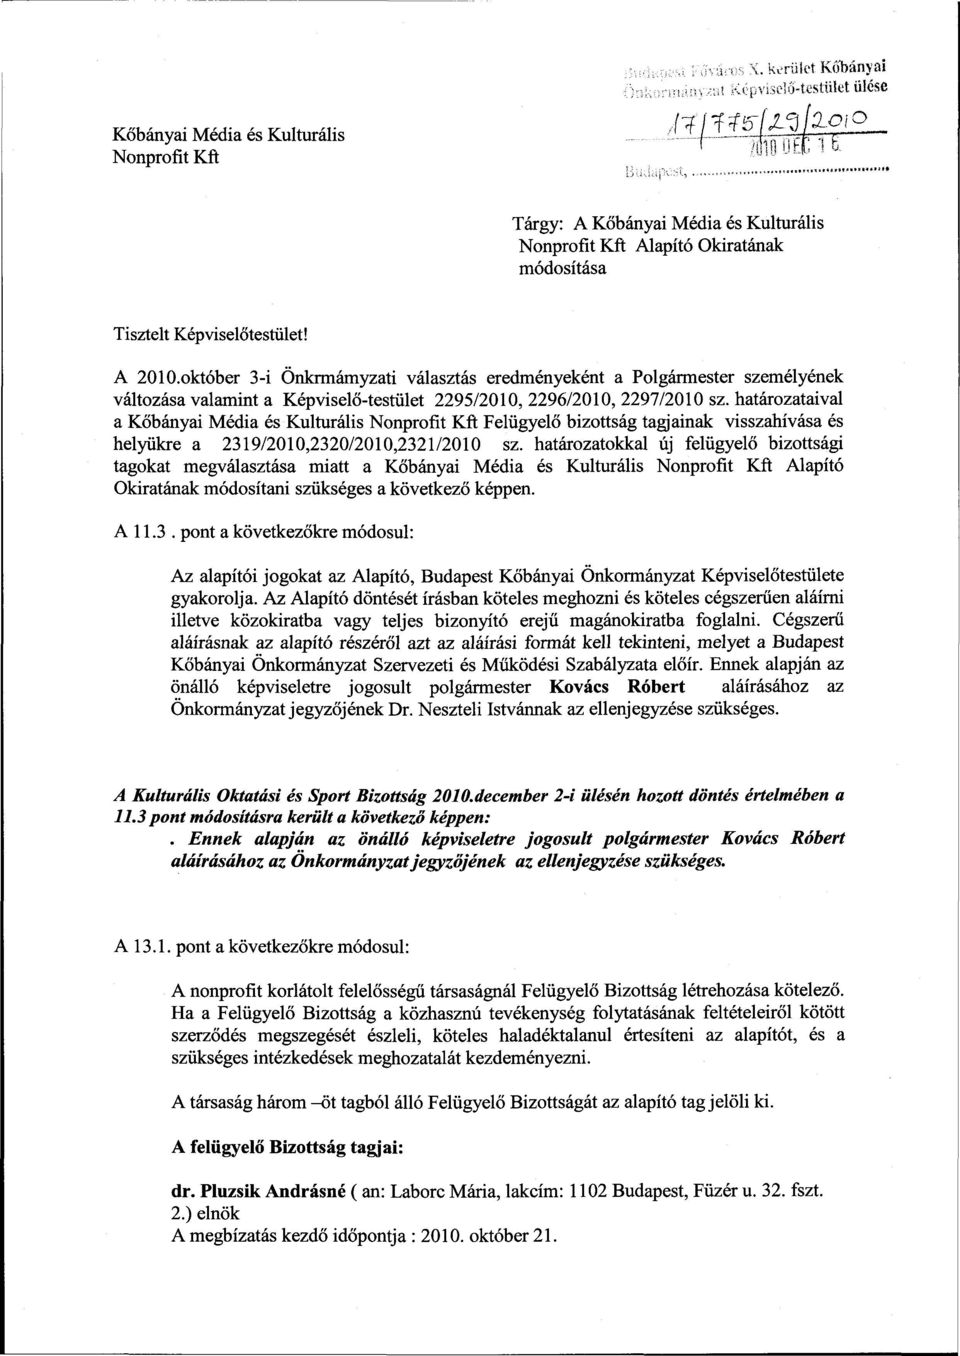 október 3-i Onkrmámyzati választás eredményeként a Polgármester személyének változása valamint a Képviselő-testület 2295/2010, 2296/2010, 2297/2010 sz.